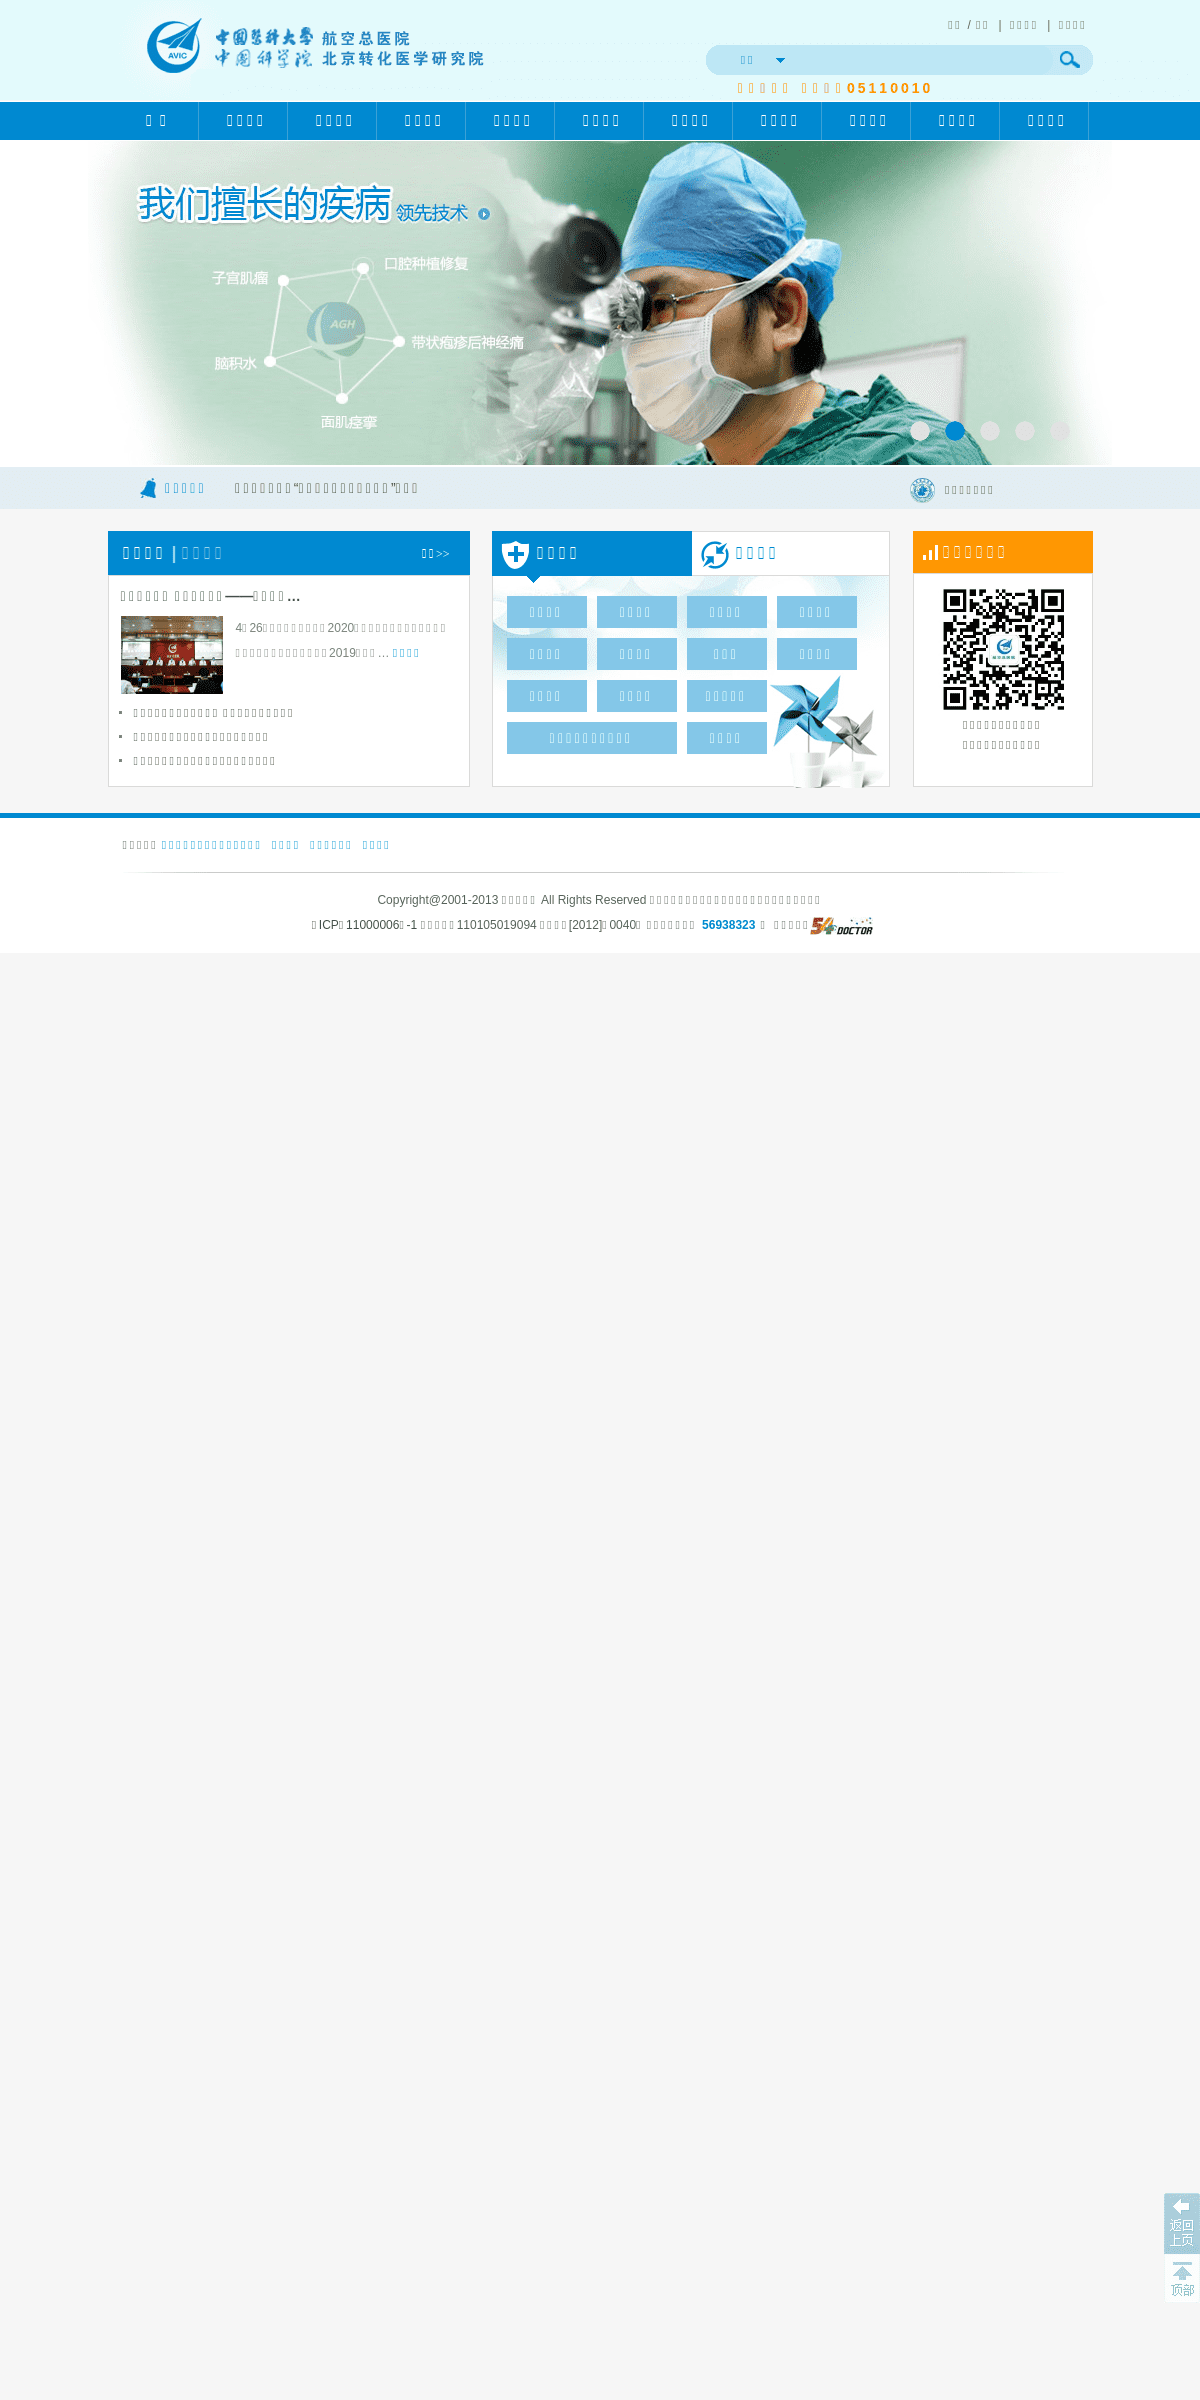 A complete backup of hkzyy.com.cn